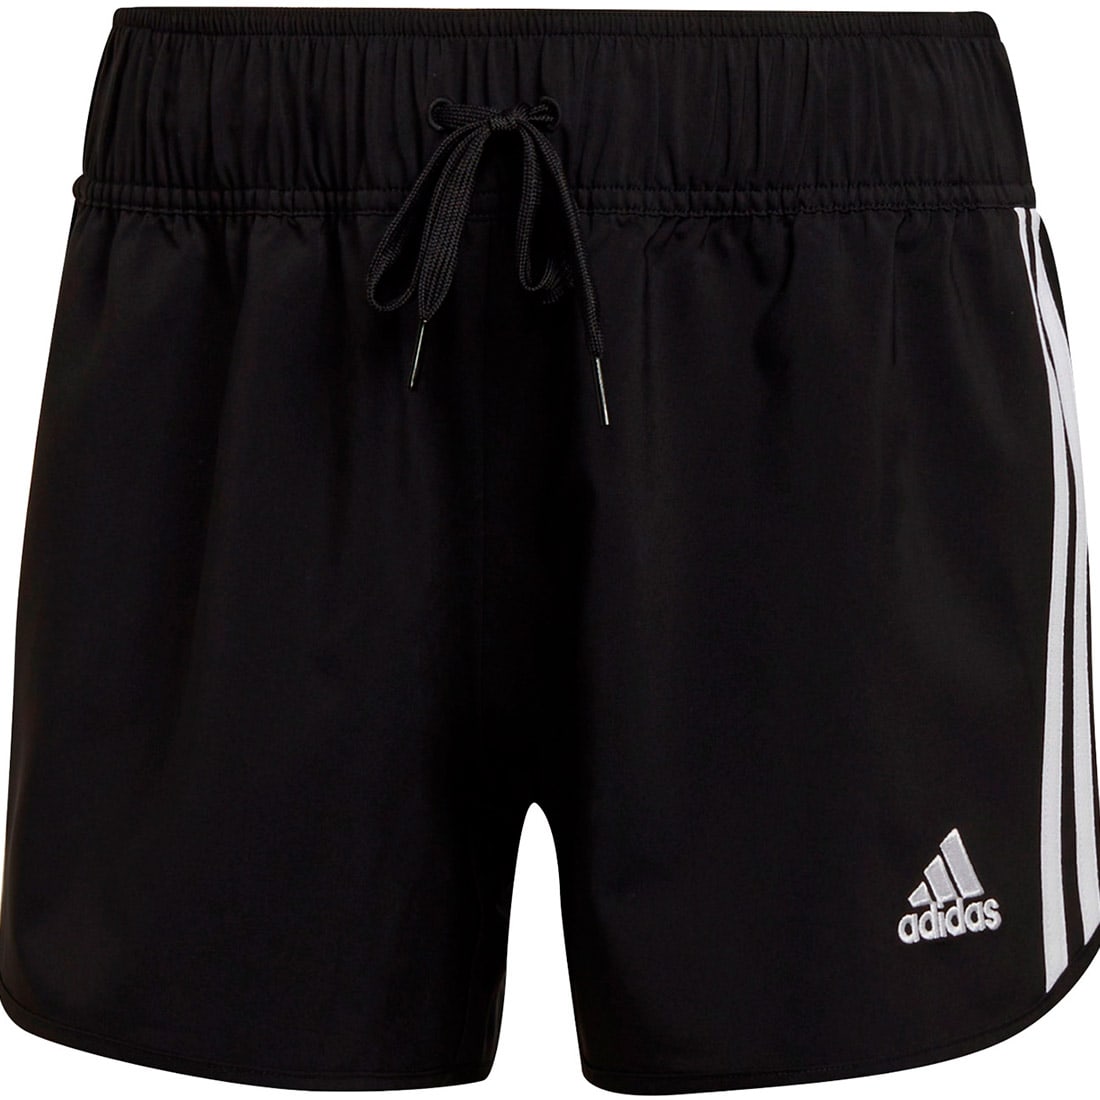 Adidas Damen Downtime Shorts Condivo 22 schwarz-weiß